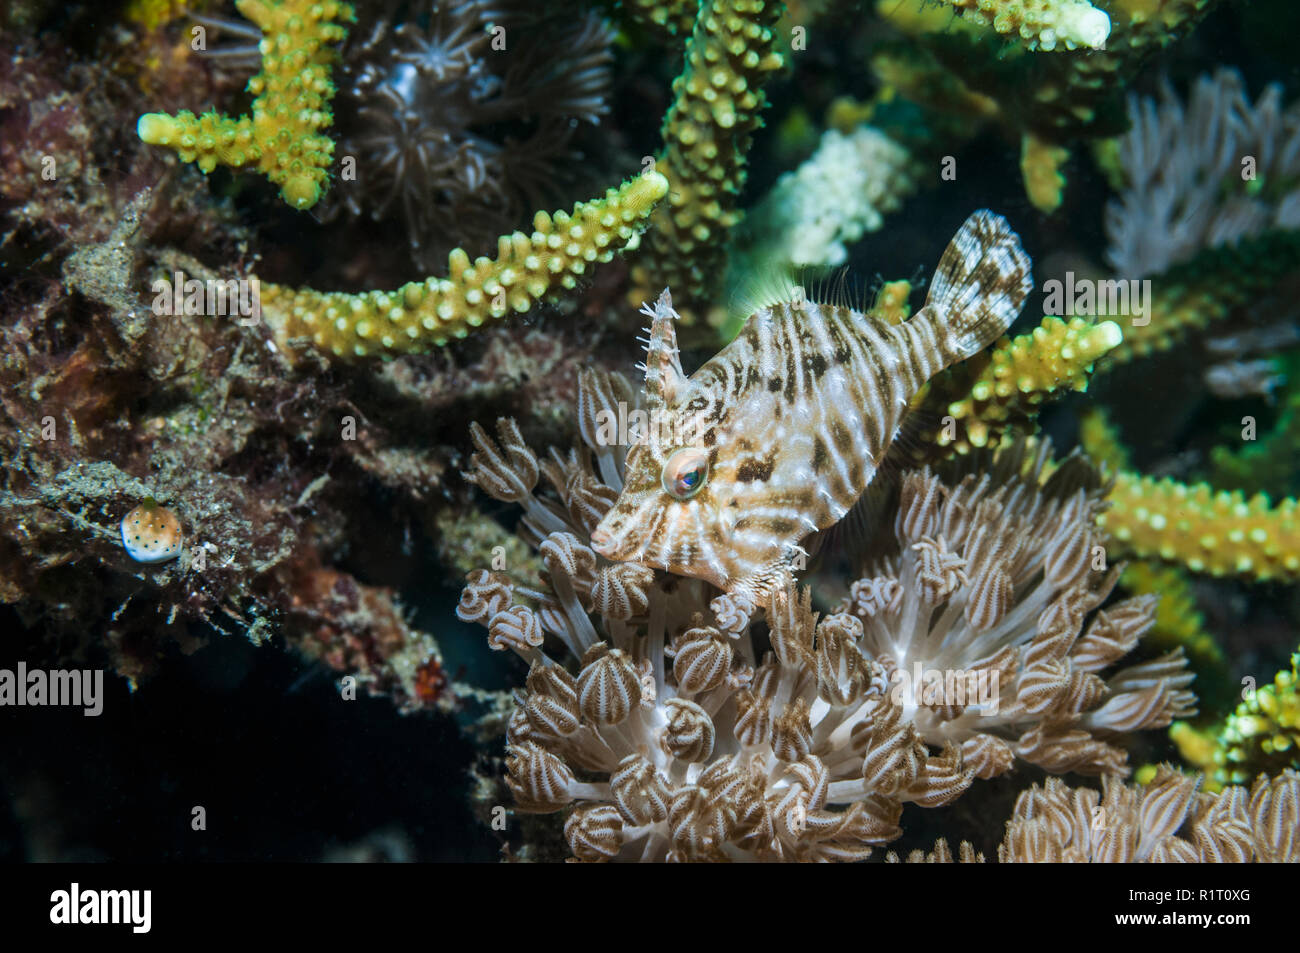 Des balistes radiale [SP] Acreichthys parmi les polypes de corail mou [Xenia sp.]. L'Indonésie. Banque D'Images